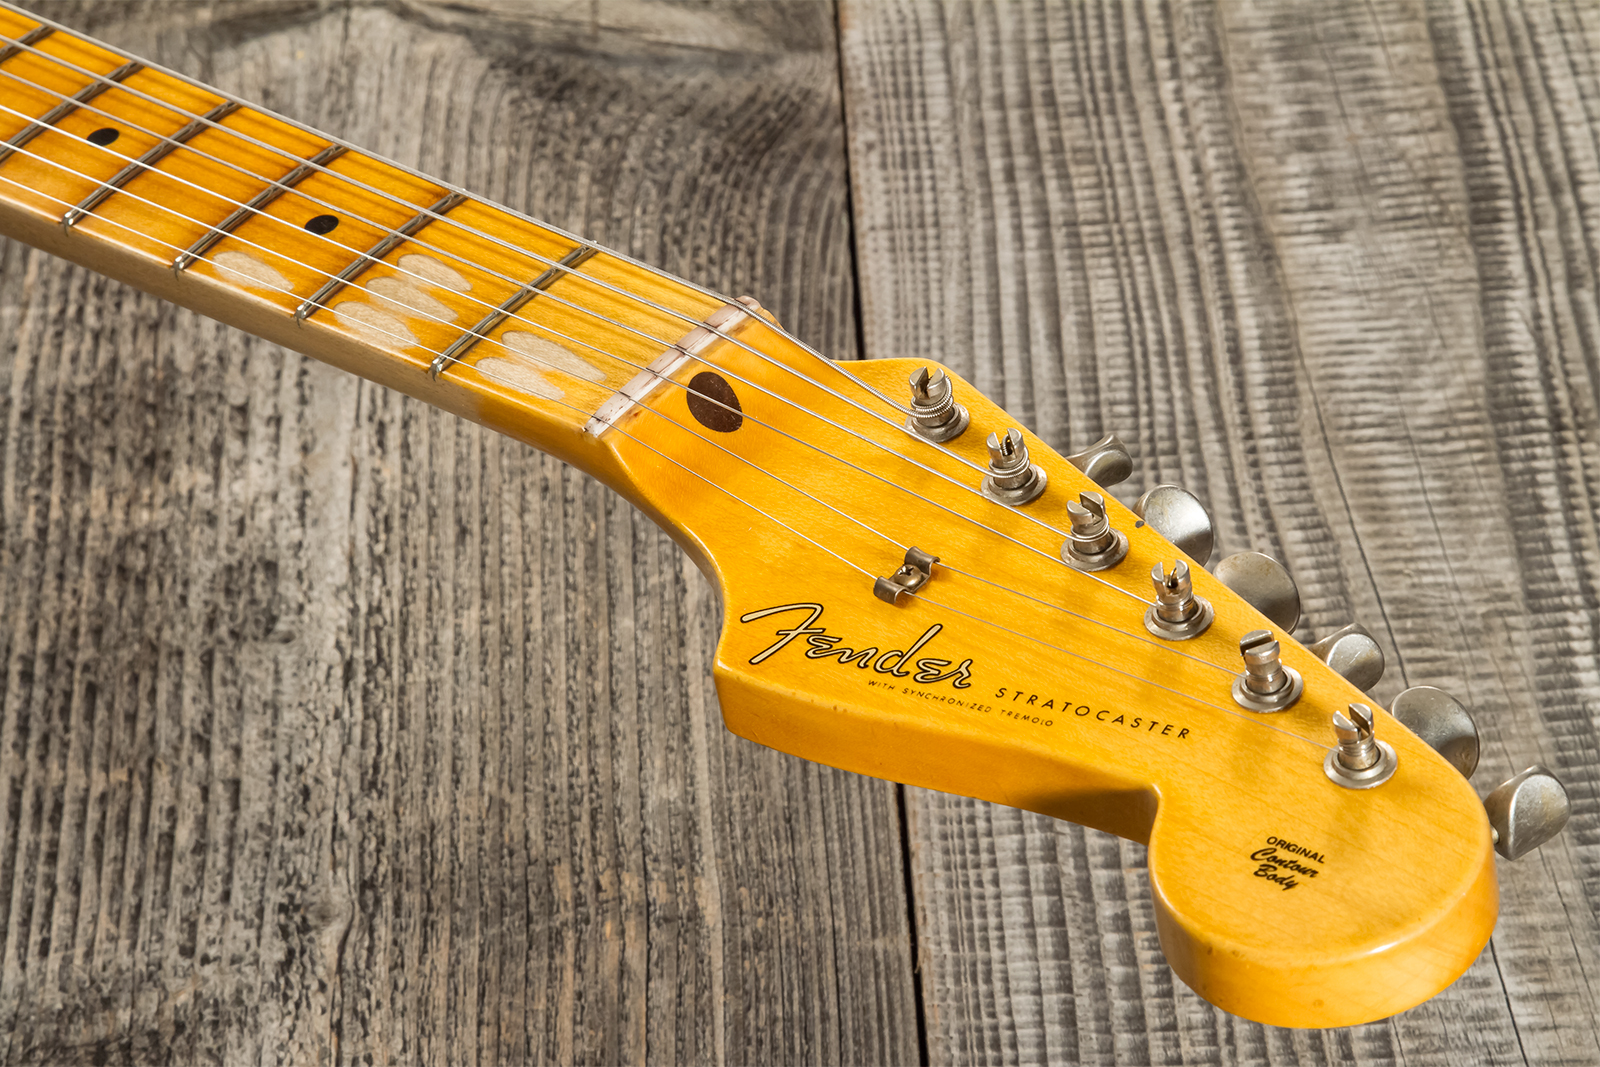 Fender Custom Shop Strat 1956 3s Trem Mn #cz571884 - Journeyman Relic Aged 2-color Sunburst - Str shape electric guitar - Variation 8